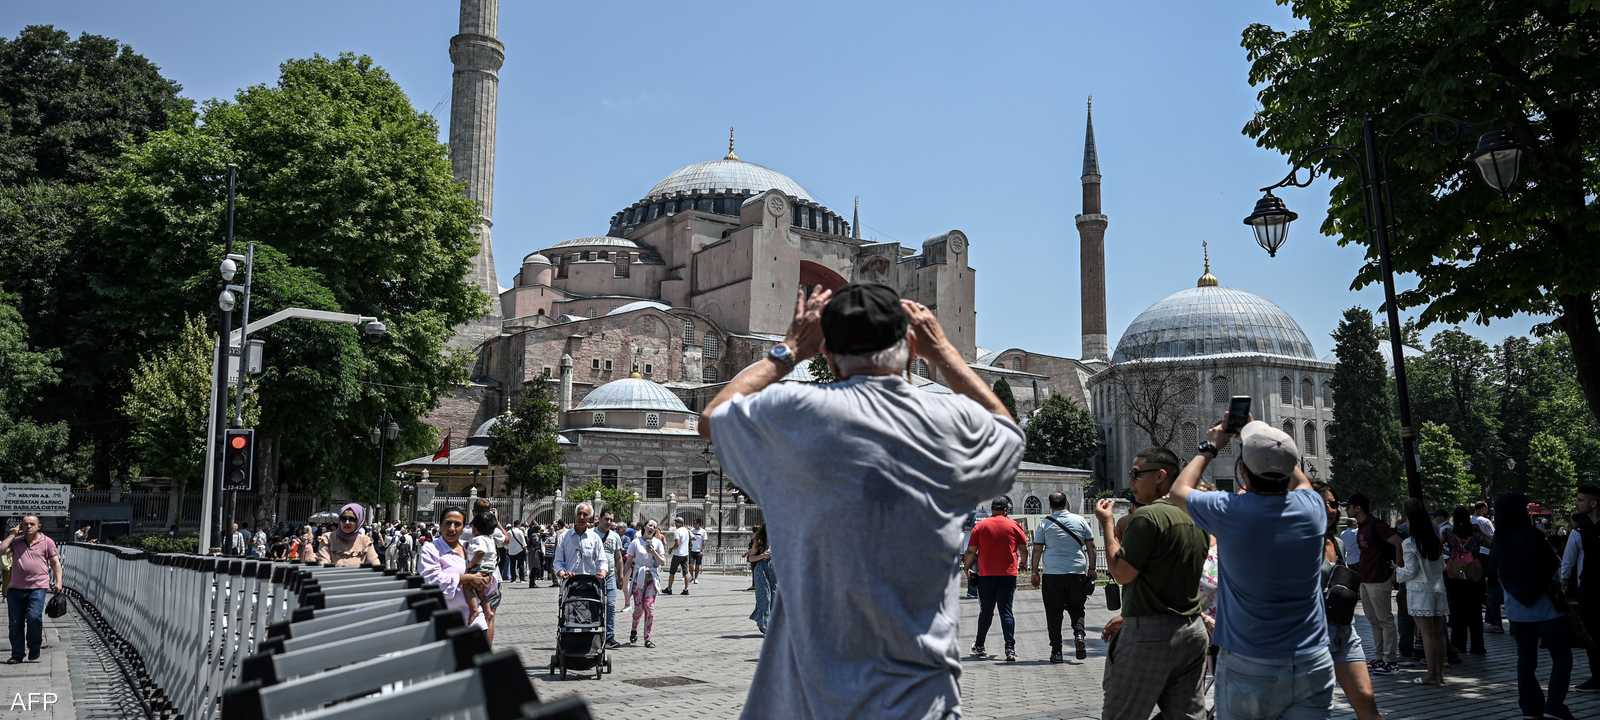 الاقتصاد التركي يعتمد بشكل كبير على السياحة